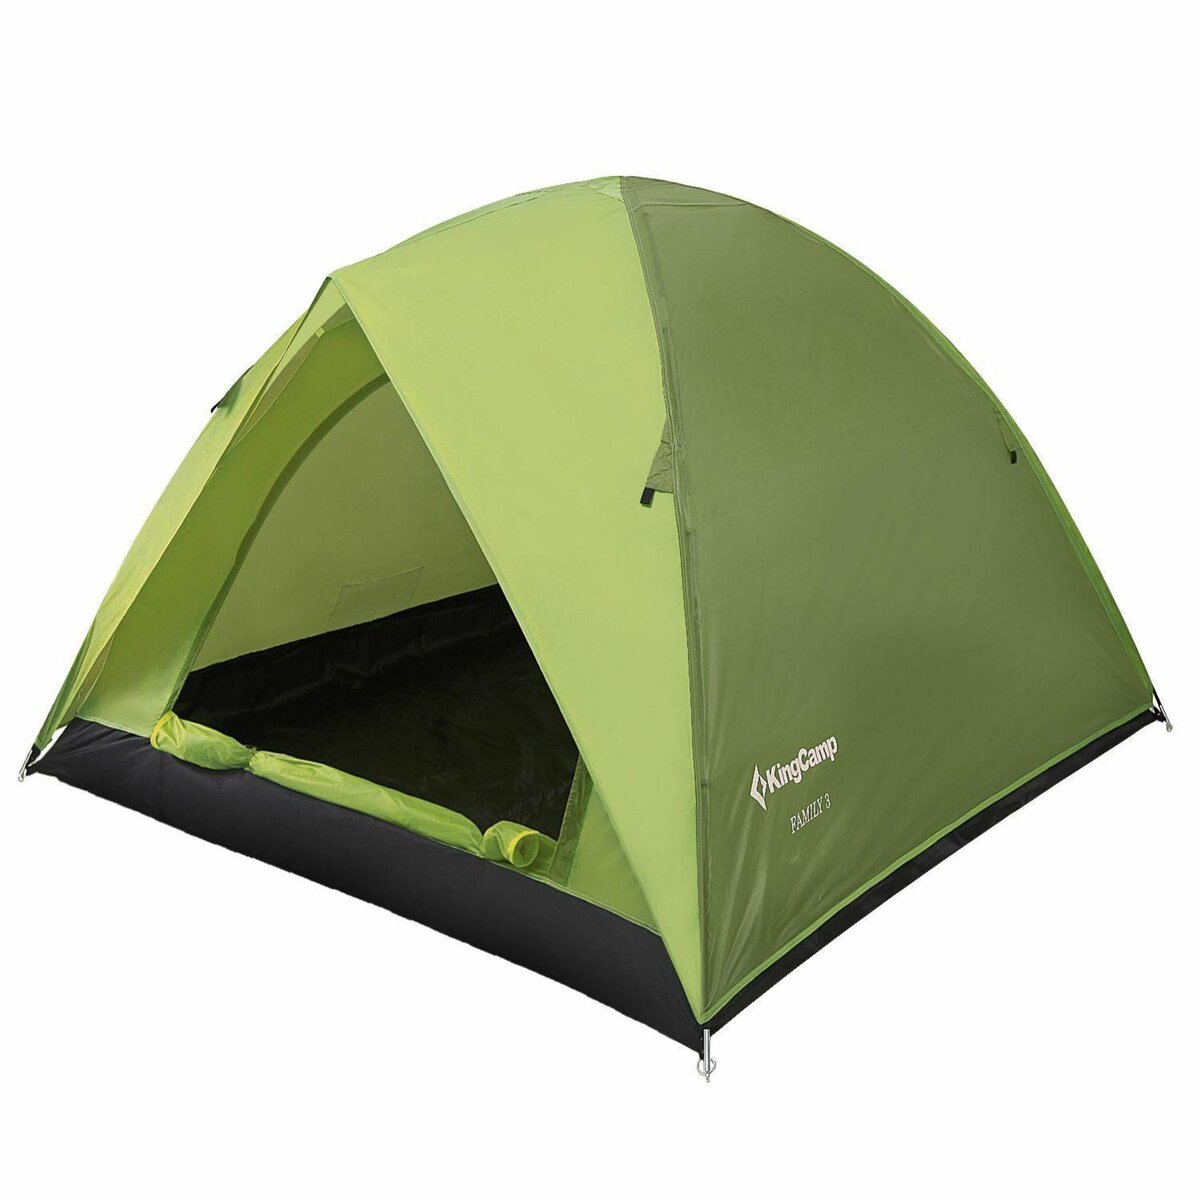 KINGCAMP Tente de camping familiale 3 places - Kingcamp - Modèle Family - 205x205x130 cm